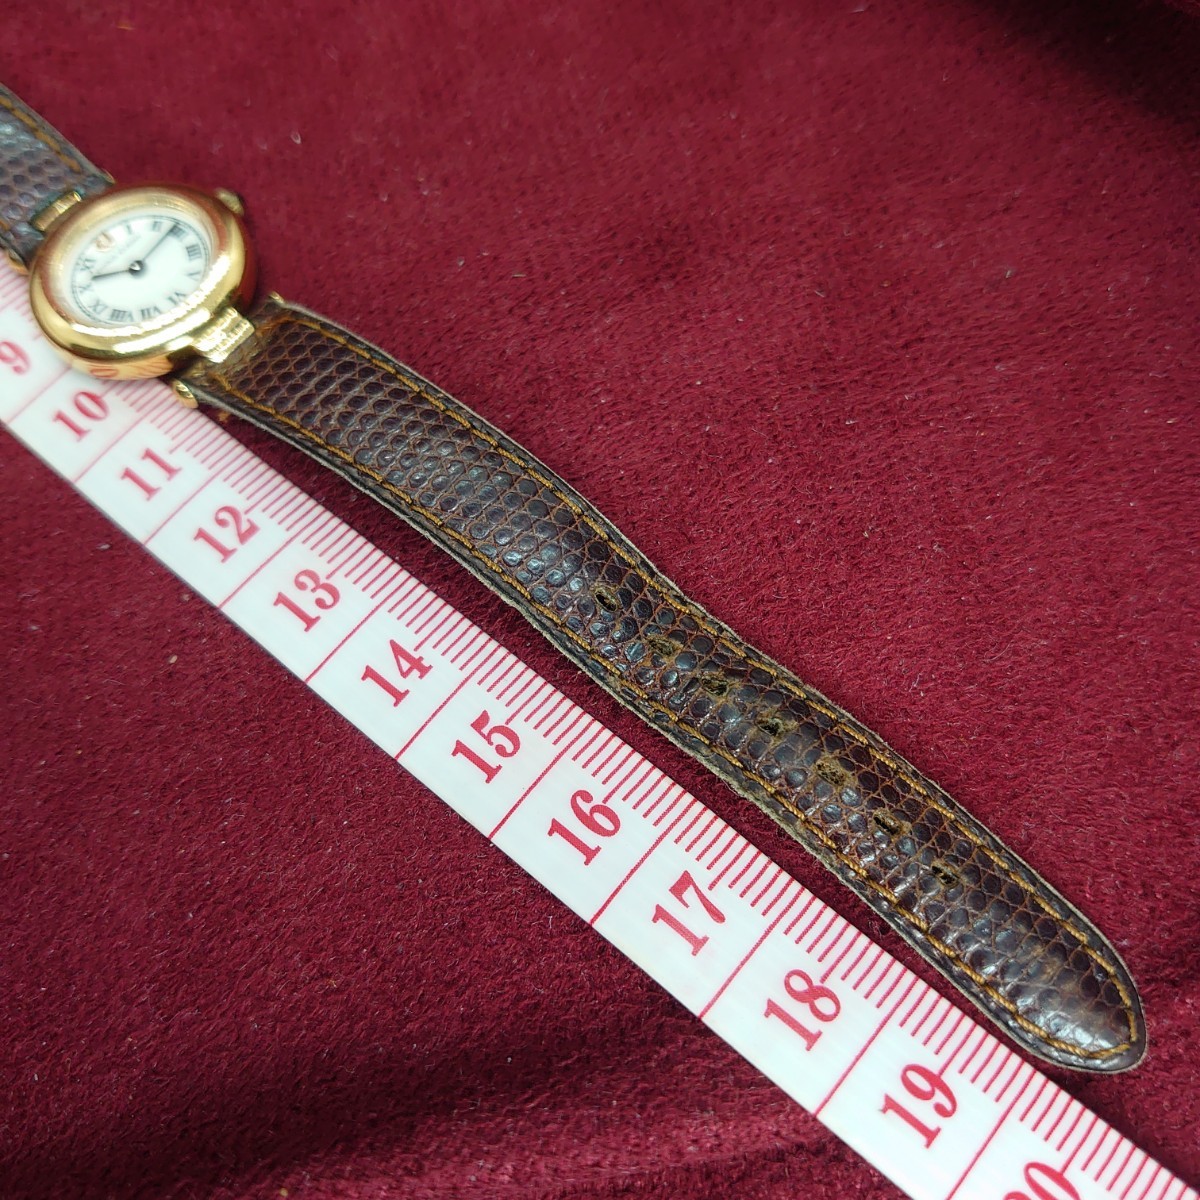 Q113【動作品】スイス製 SWISS MADE CHARLES JOURDAN 34.21 レディース 2針アナログ腕時計 シャルルジョルダン ゴールド×白文字盤_画像8